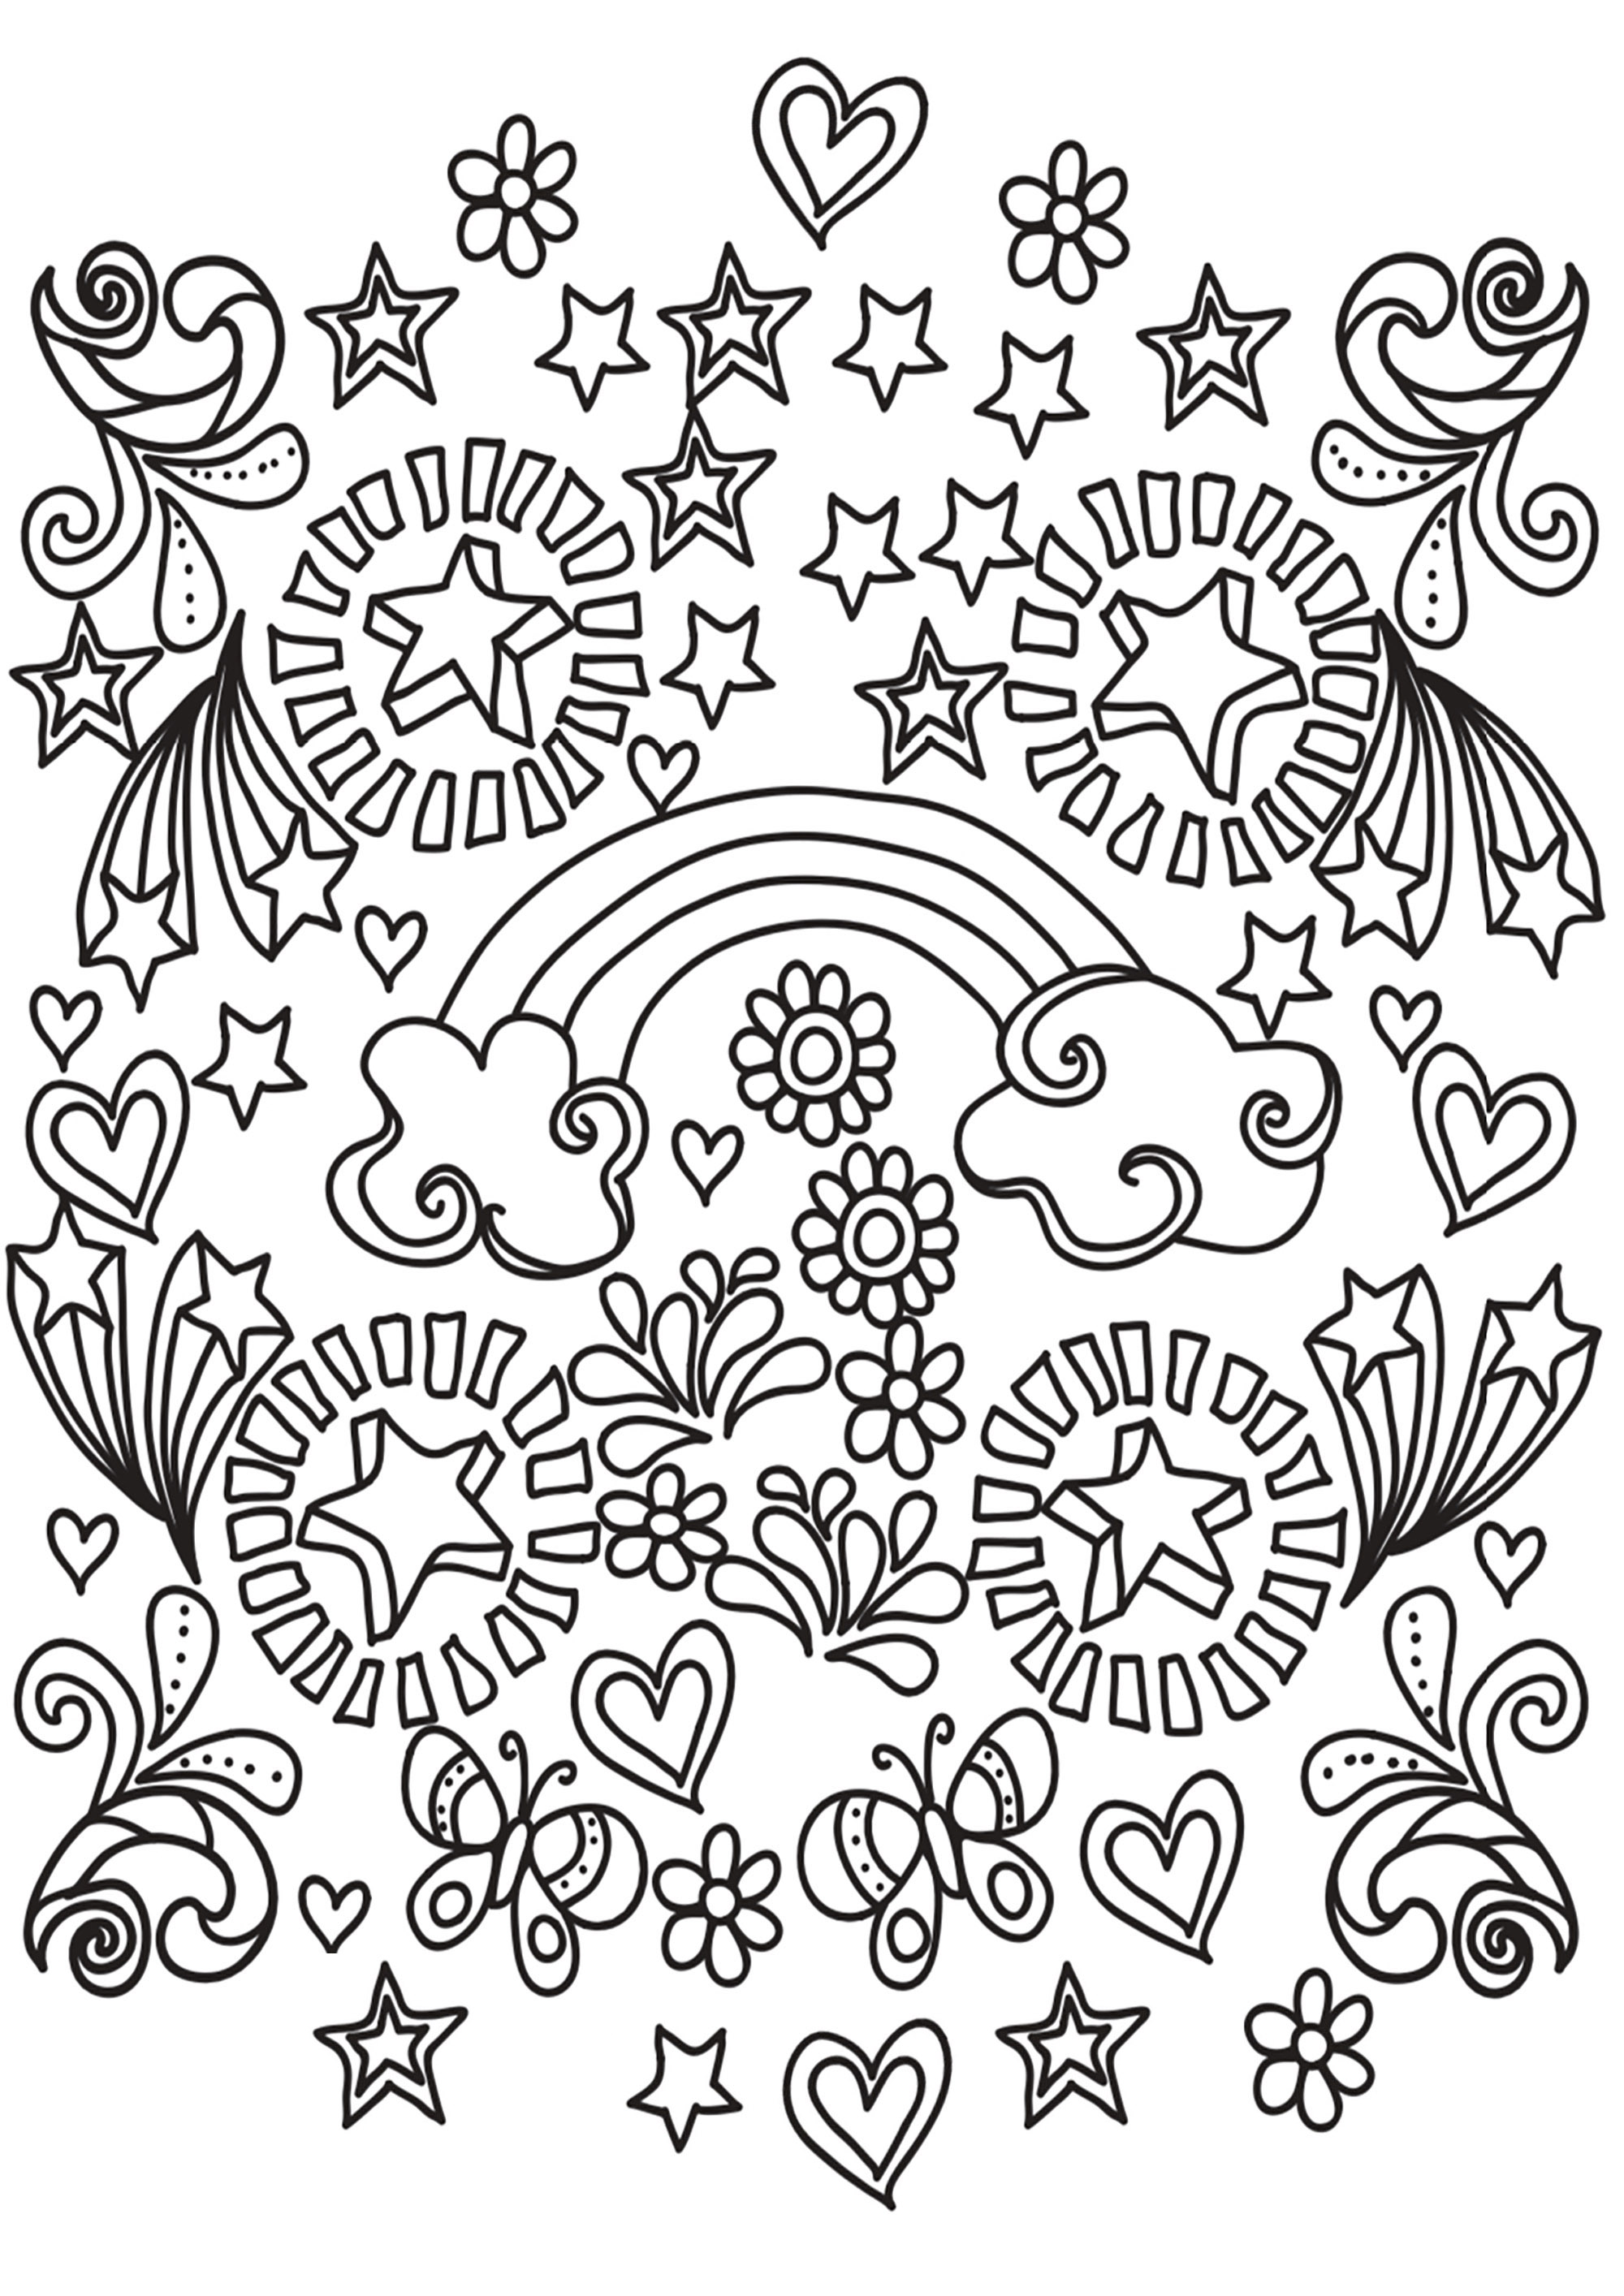 Um Doodle cheio de formas, temas e motivos que representam a alegria de viver. Estrelas, corações, arco-íris, borboletas... Acabarás este livro de colorir com um grande sorriso!